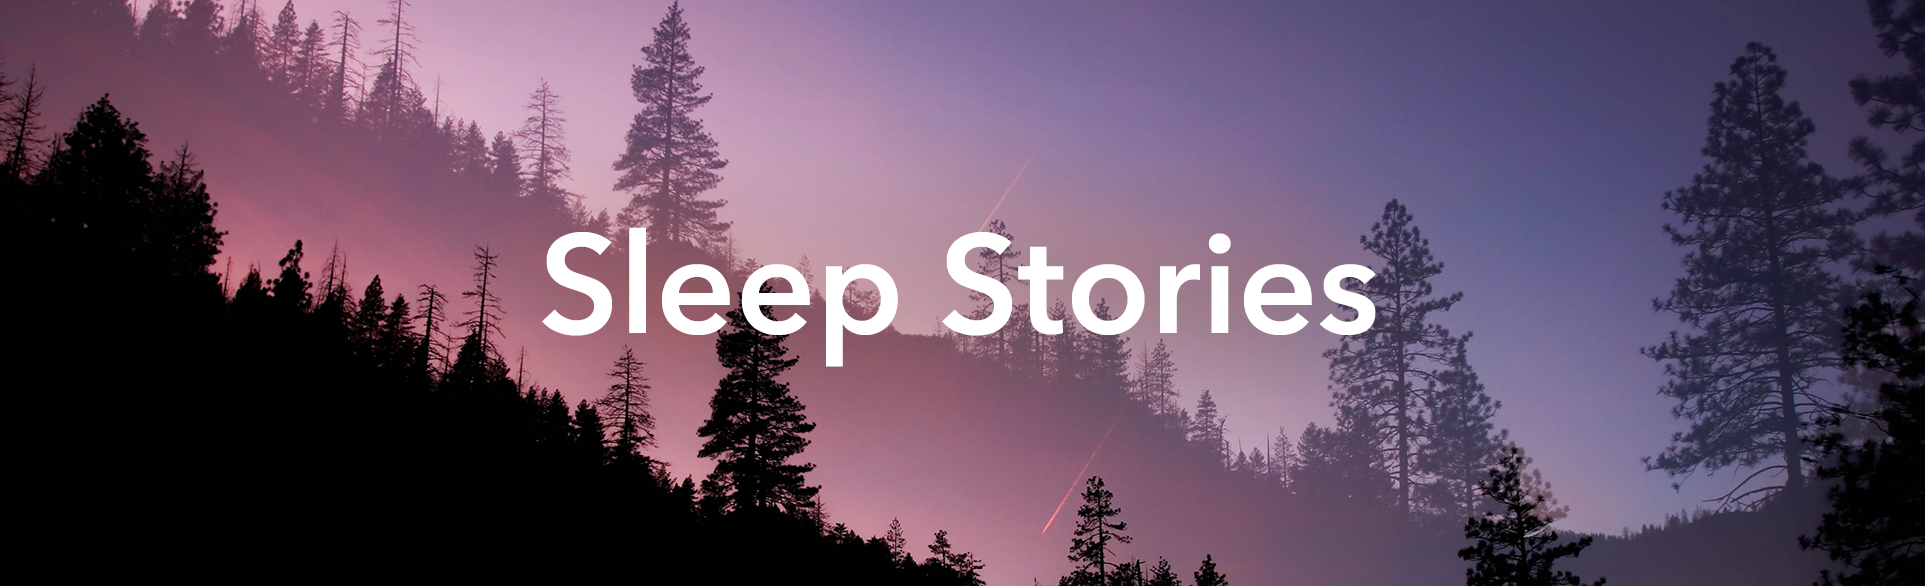 Sleep Stories.png